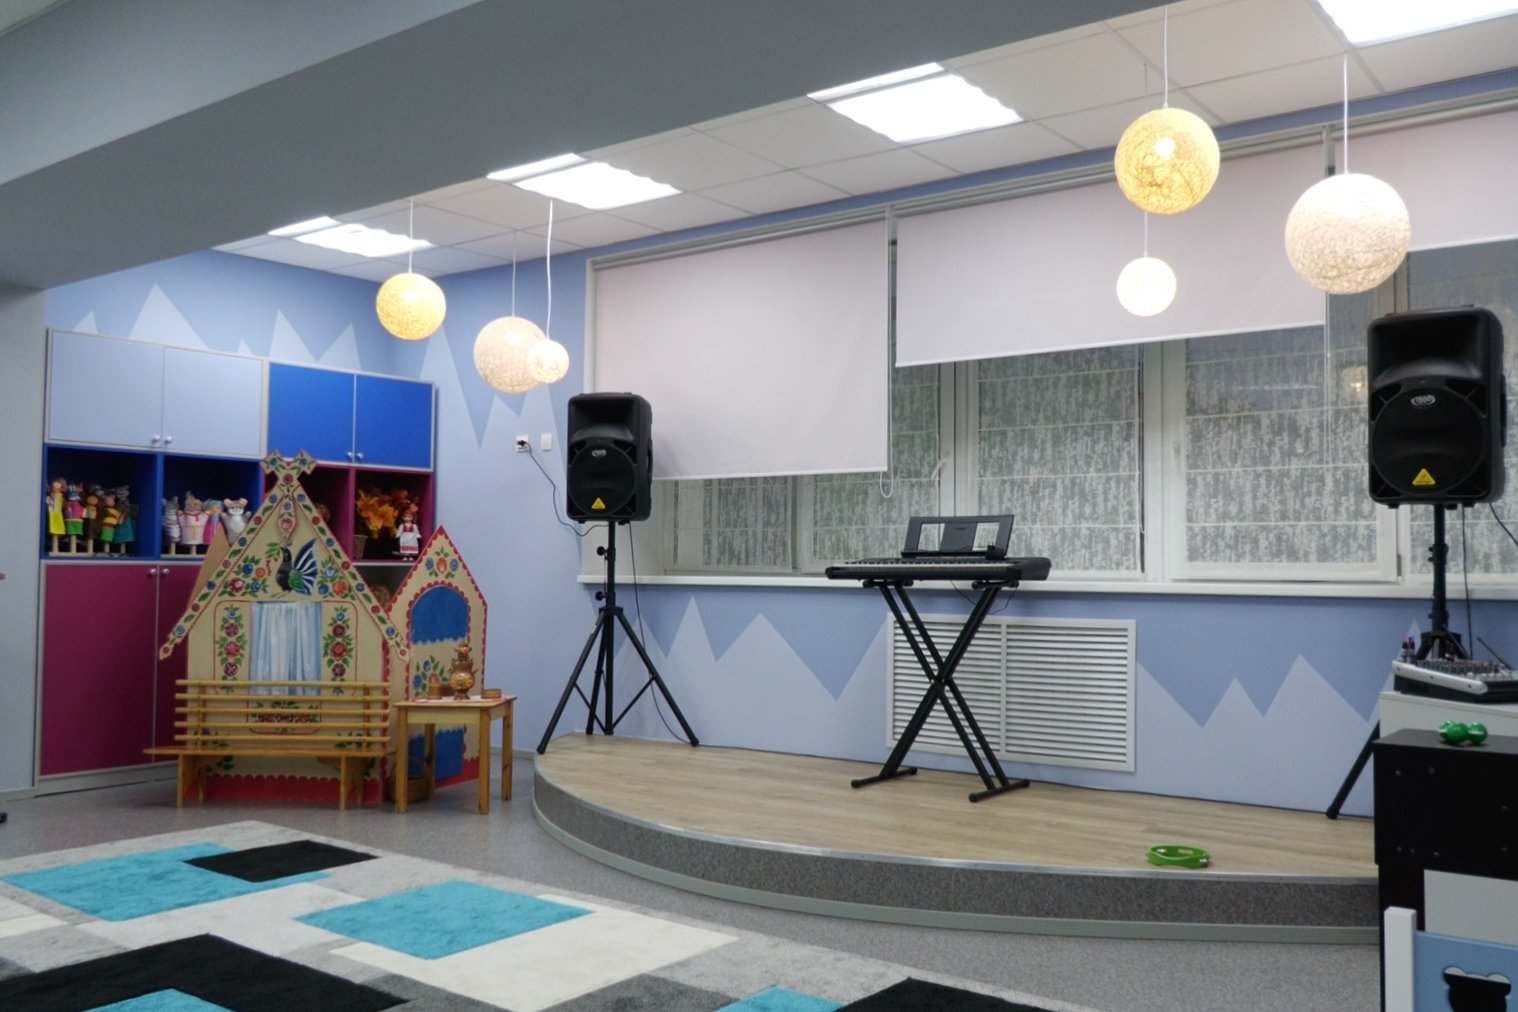 Новогоднее украшение музыкального зала в детском саду